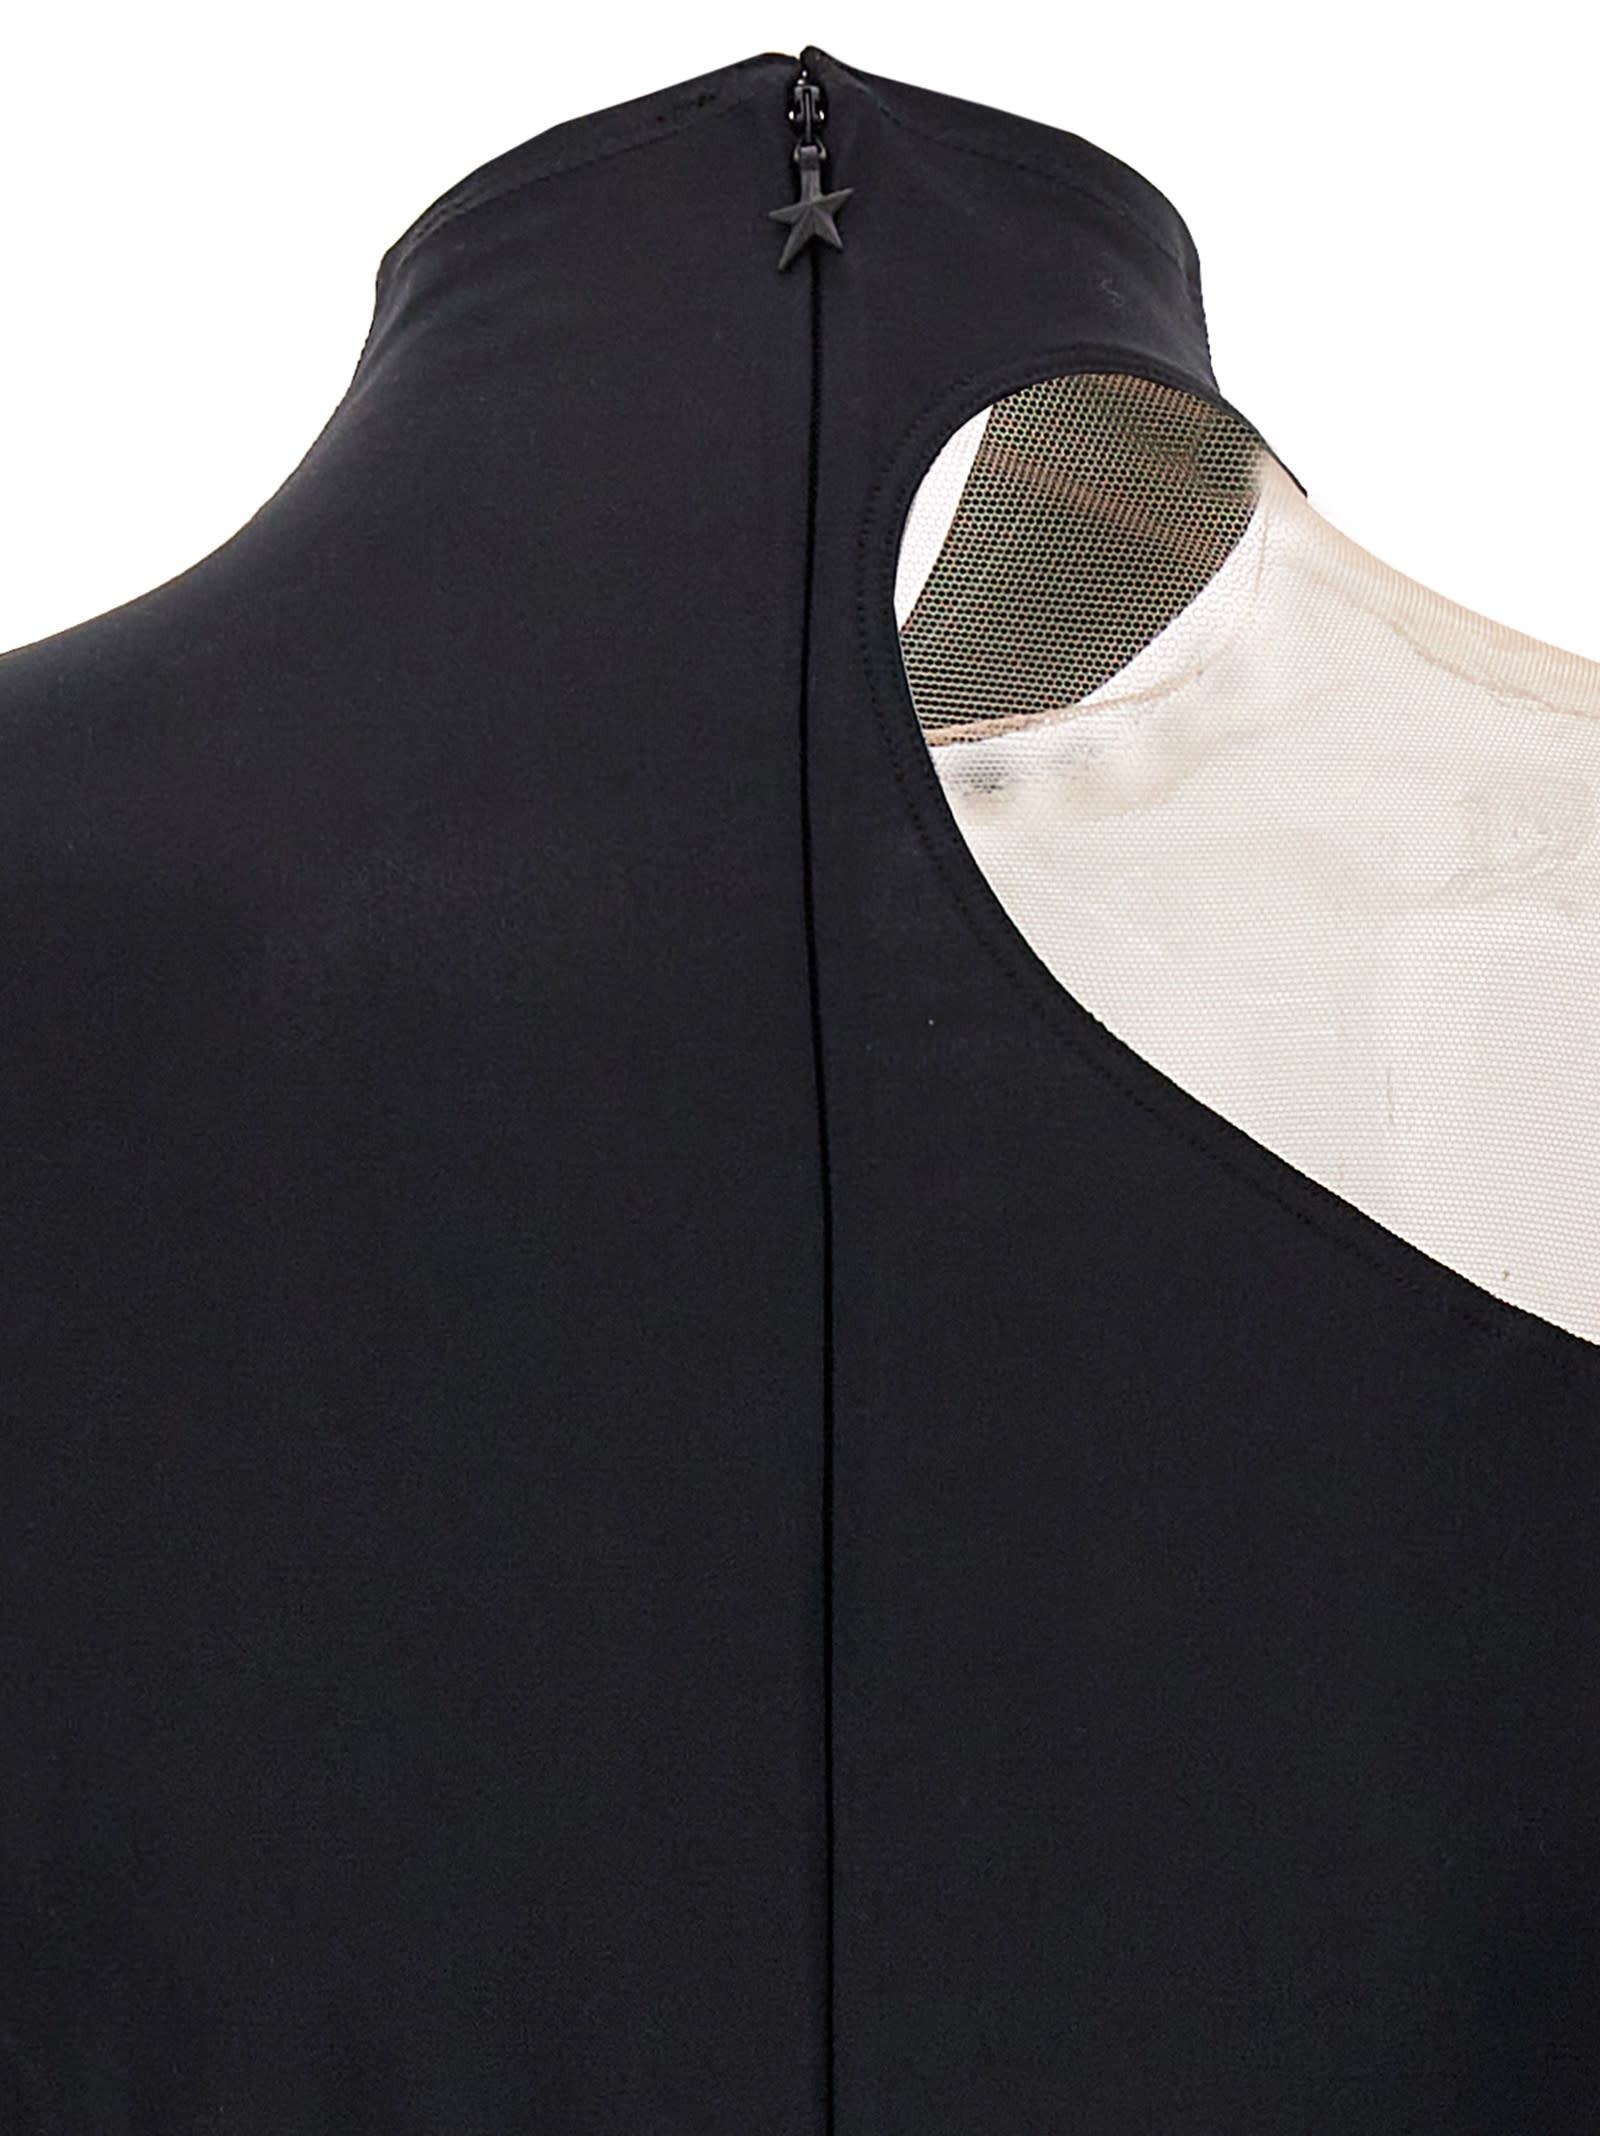 Shop Mugler Transparent Tulle Bodysuit In Black